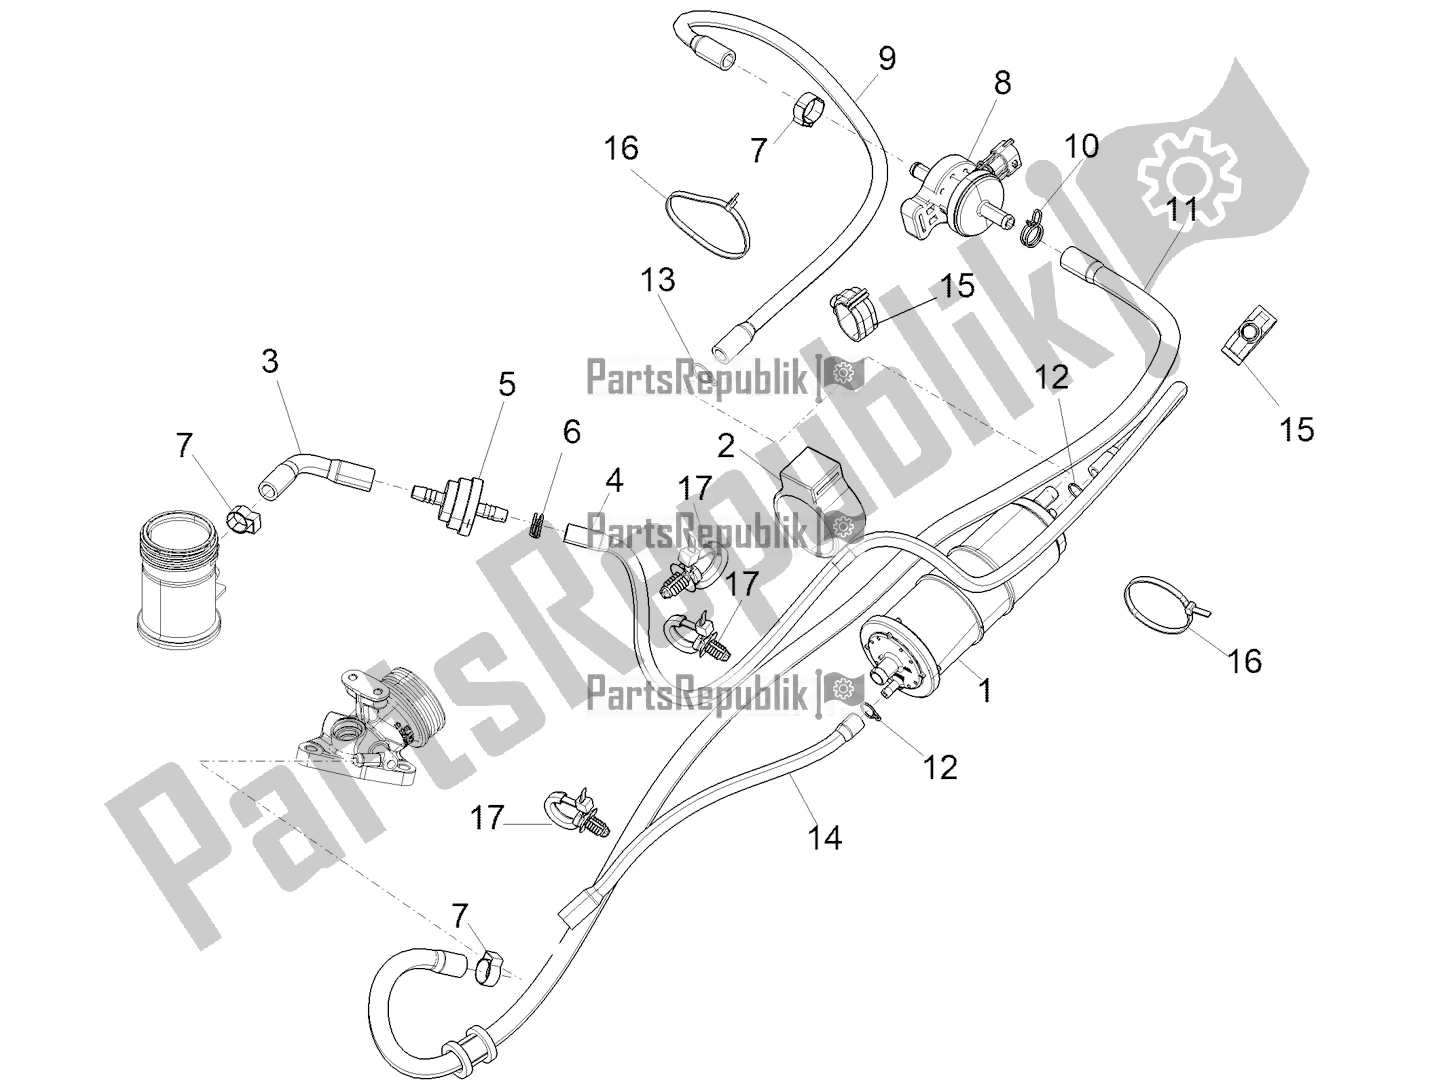 Toutes les pièces pour le Système Anti-percolation du Piaggio Medley 125 ABS Apac 2022